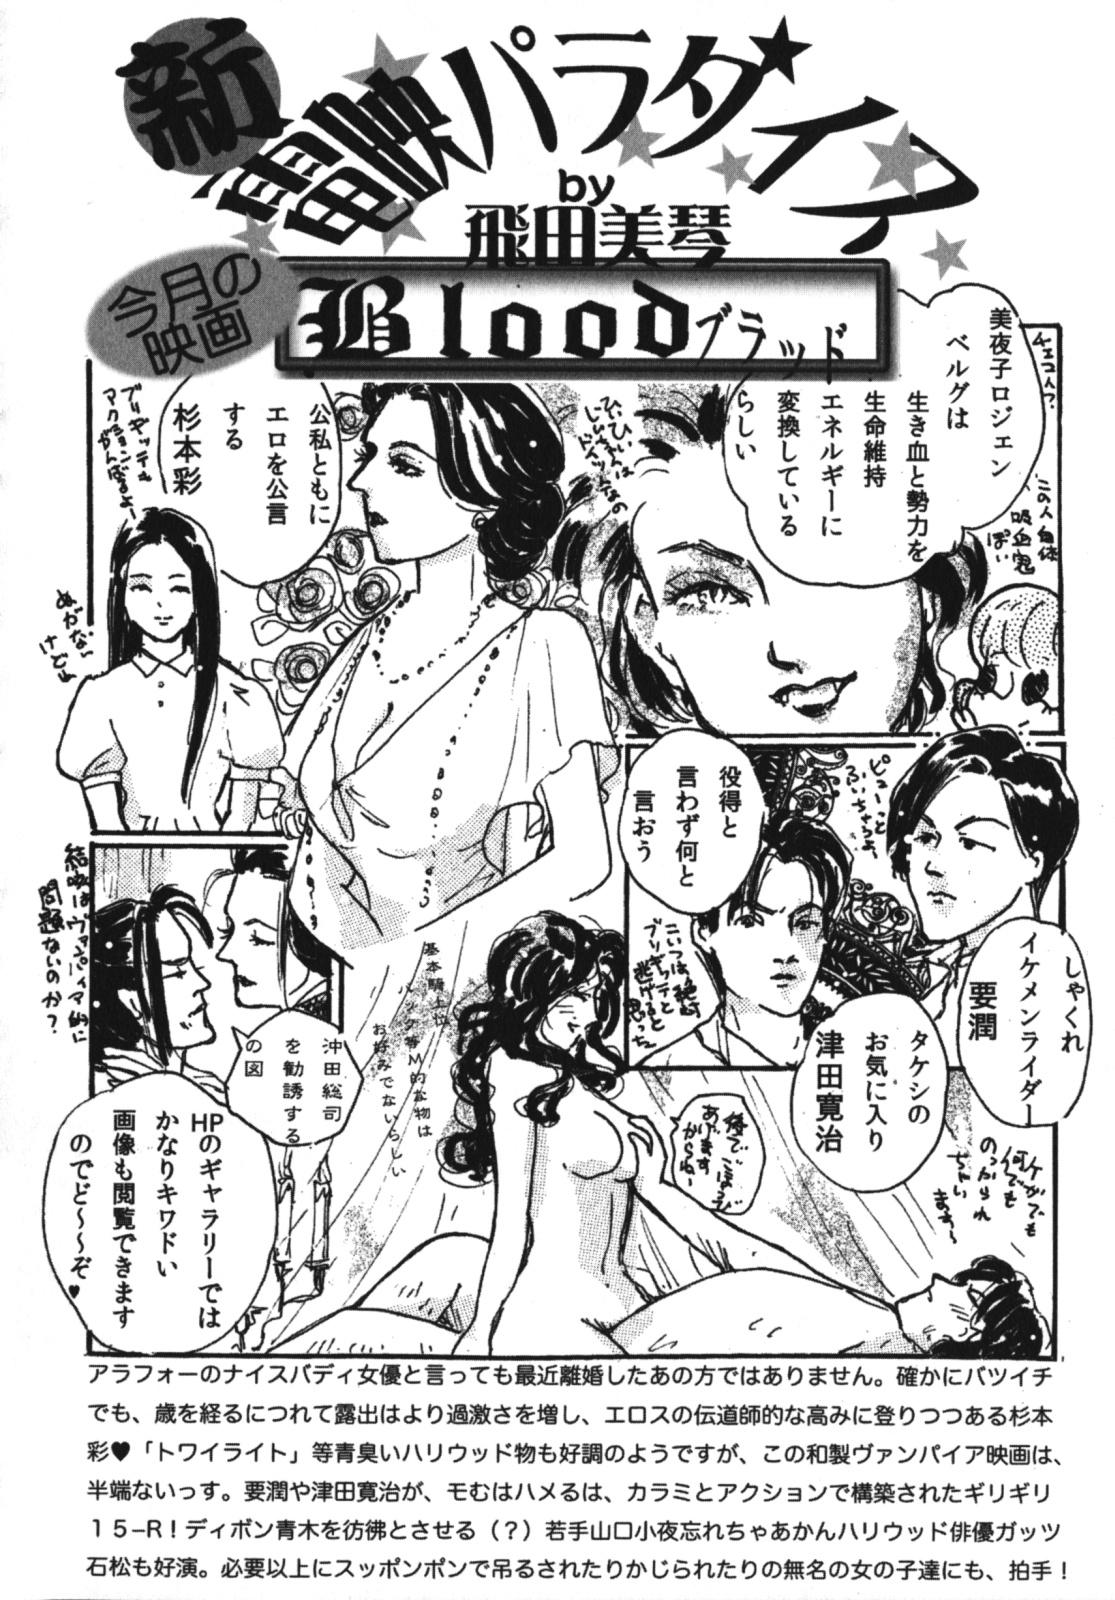 Geki Yaba Vol.4 - Namade Shitene 230